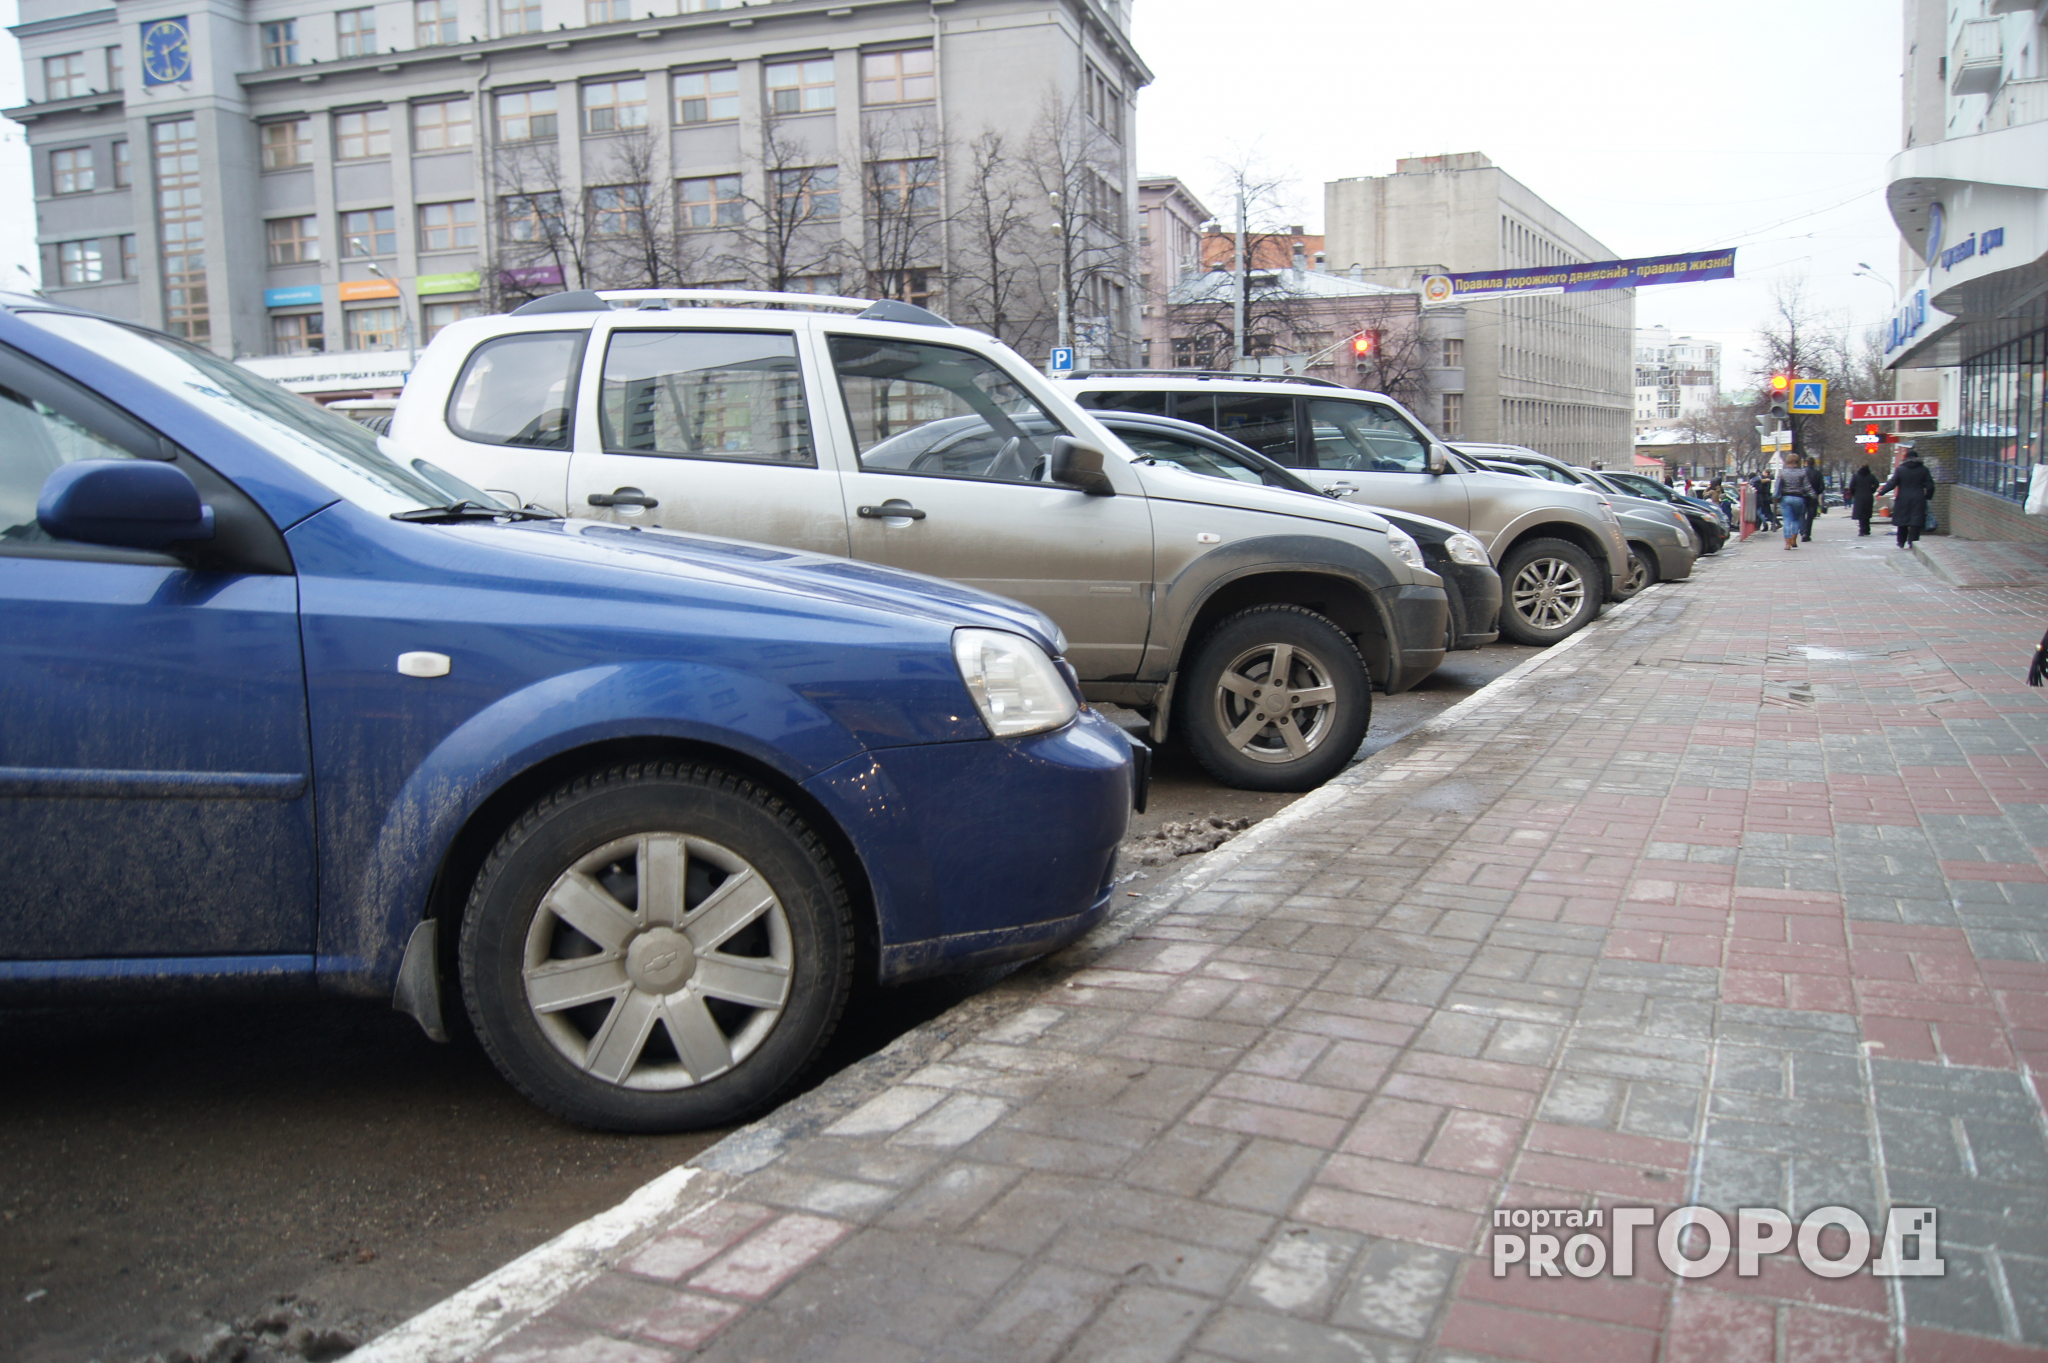 Две платные парковки в центре Нижнего обойдутся городу в семь миллионов